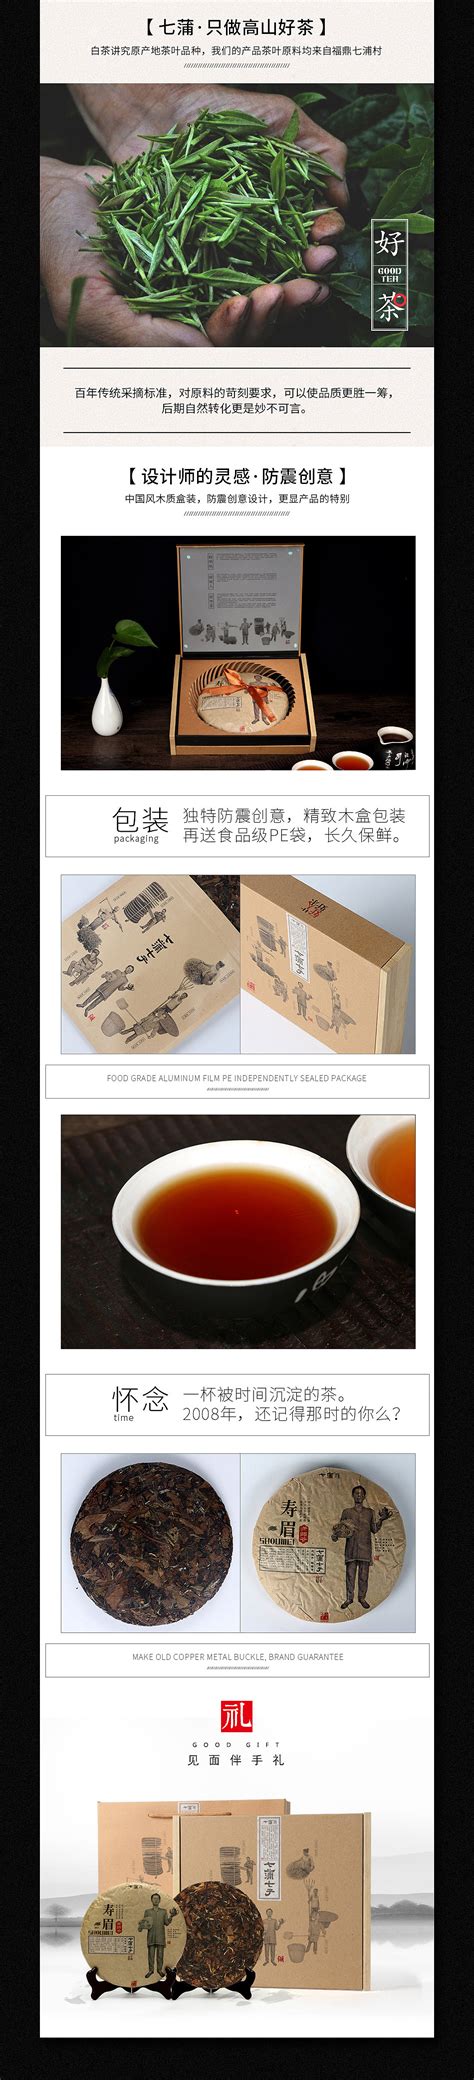 茶叶直播电商新红利探讨-爱普茶网,最新茶资讯网站,https://www.ipucha.com